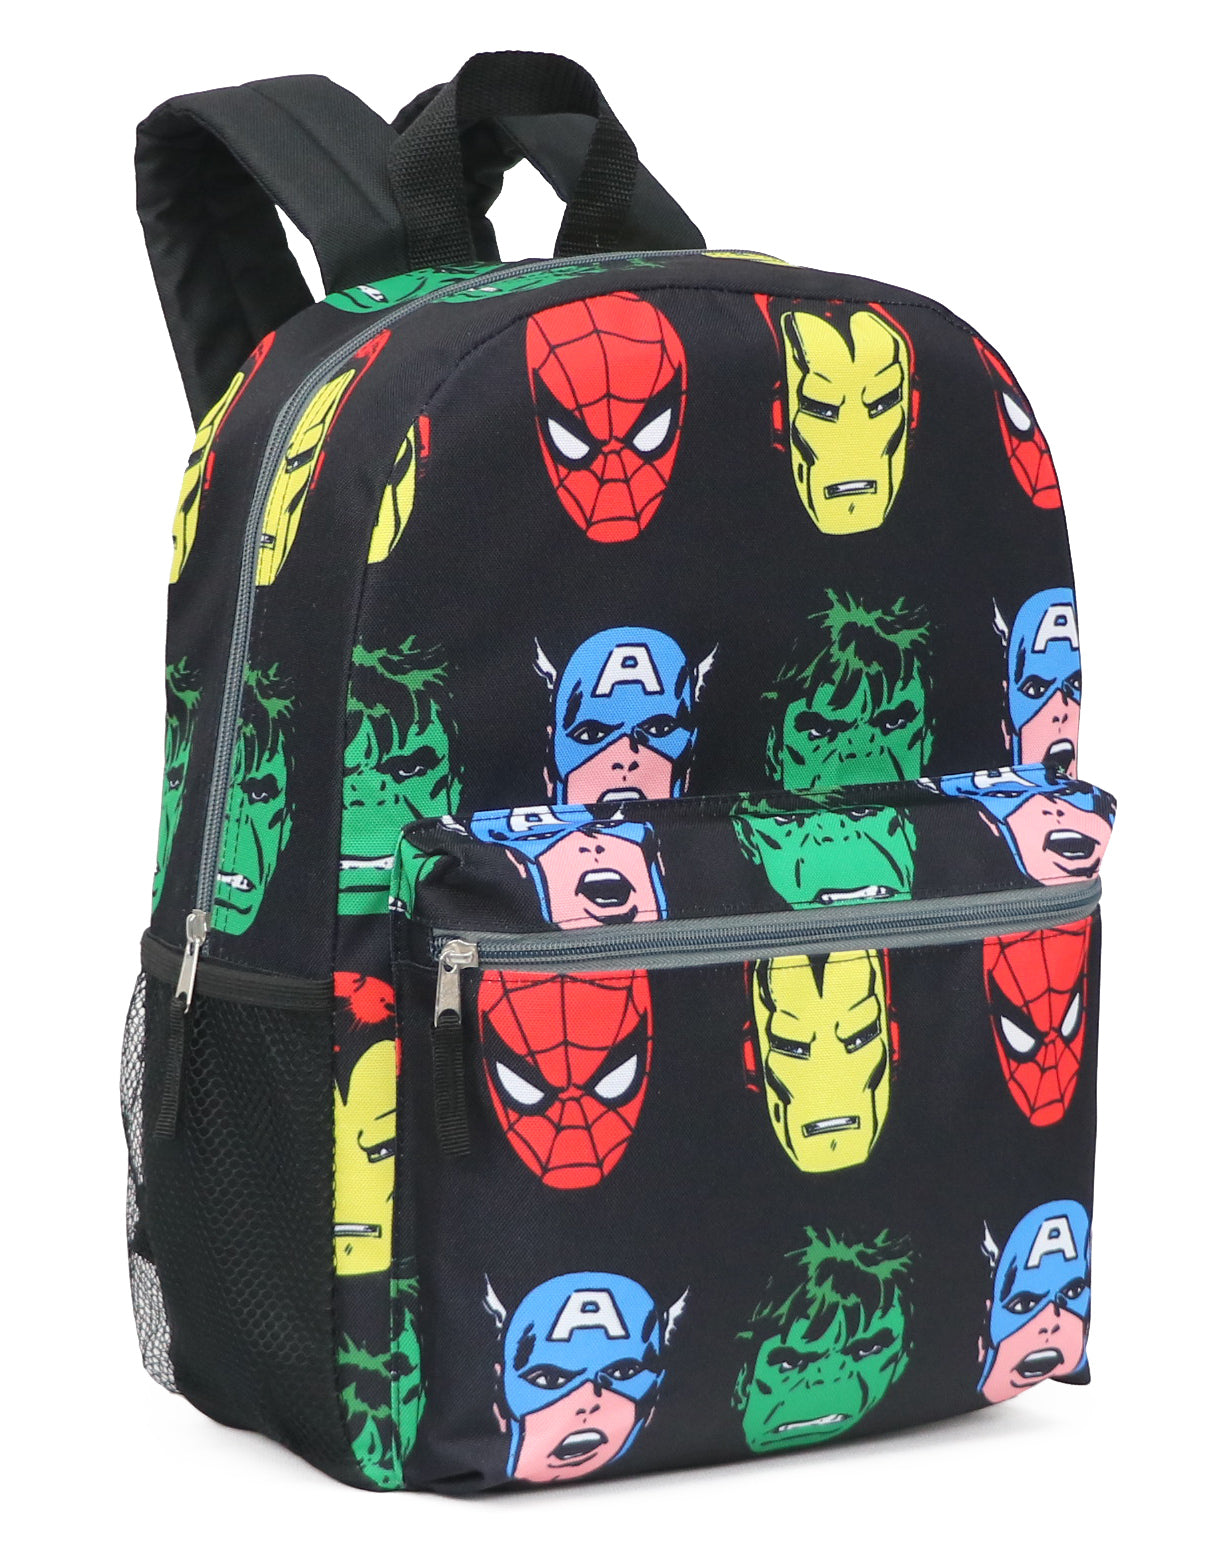 Marvel Avengers Full Size All Over Print Backpack